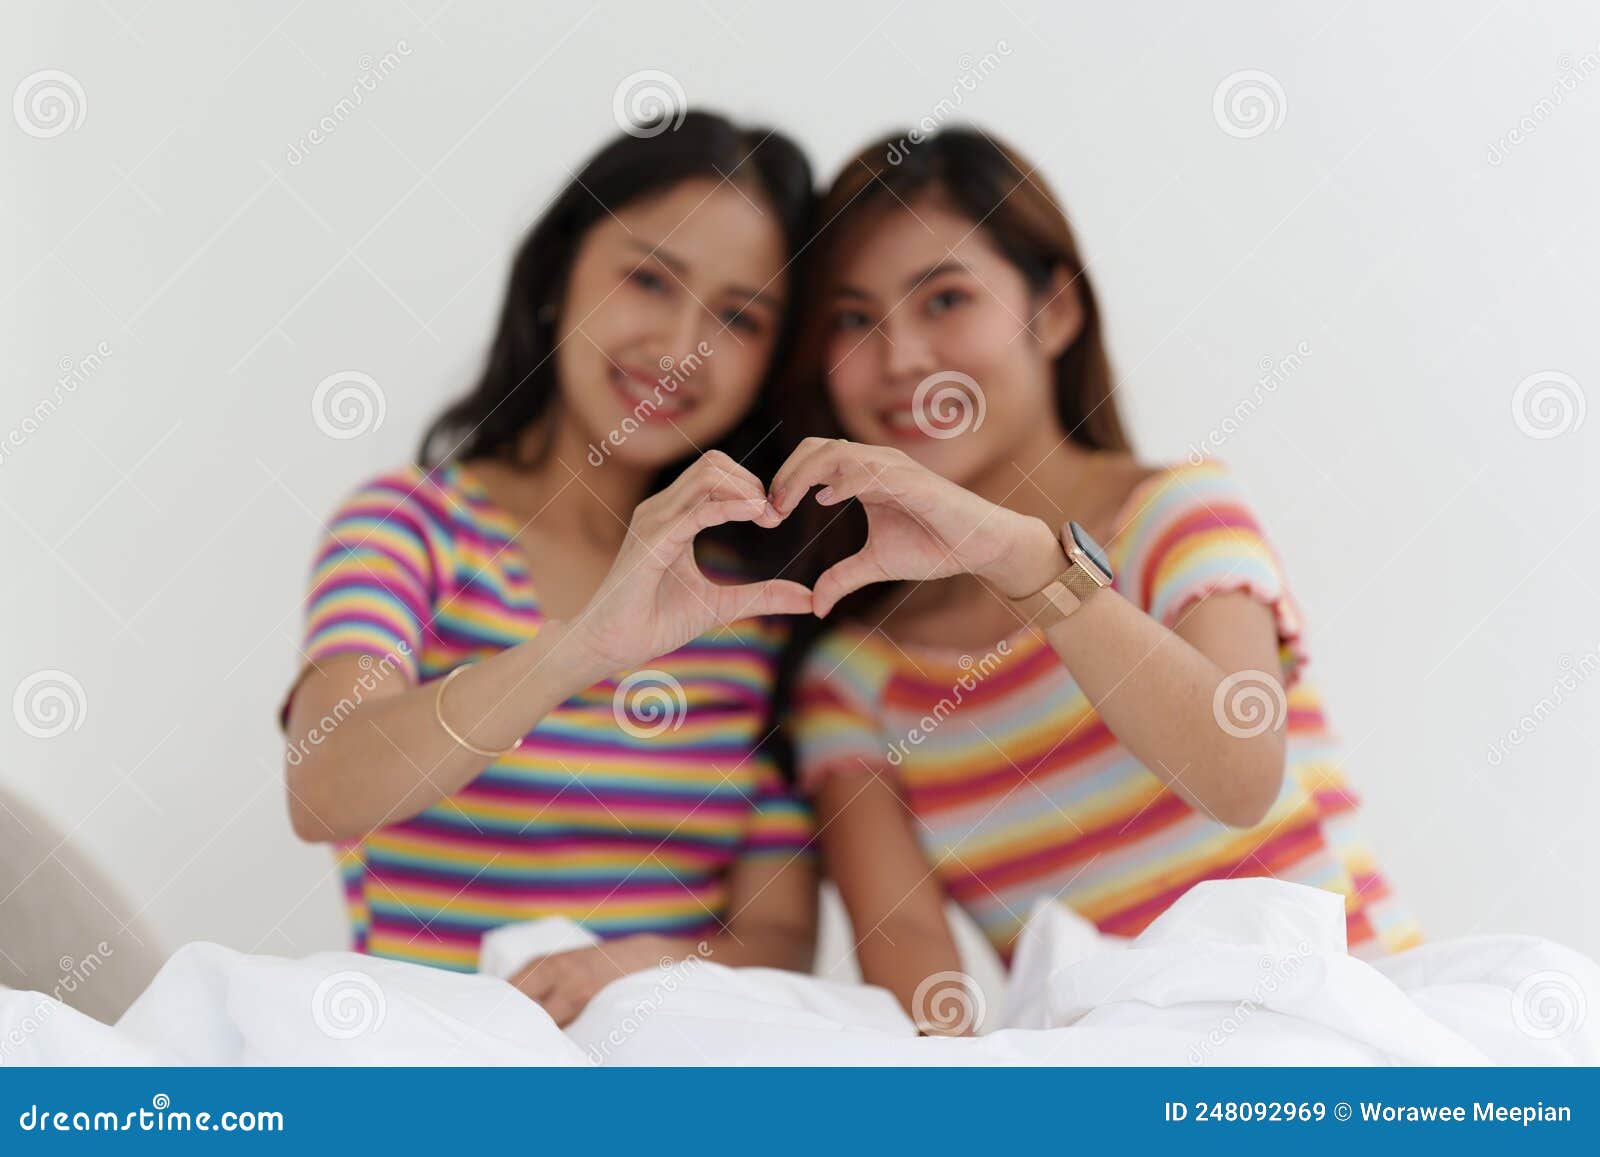 Молодые лесбиянки lgbtq азиатские женщины обнимаются и целуются дома